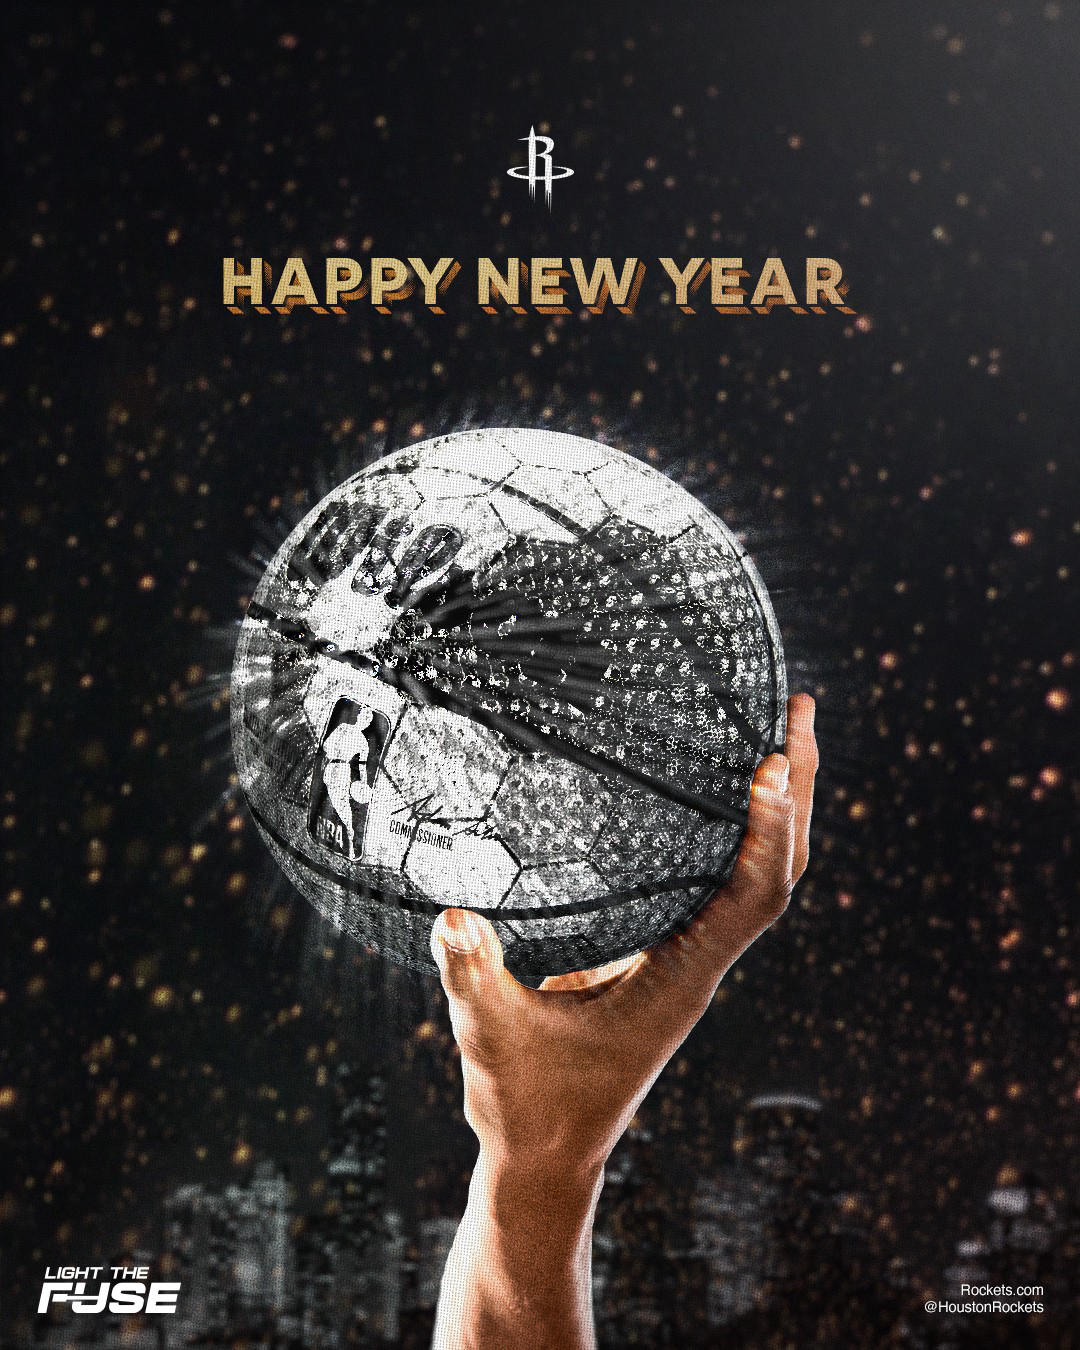 Houston Rockets - Happy New Year